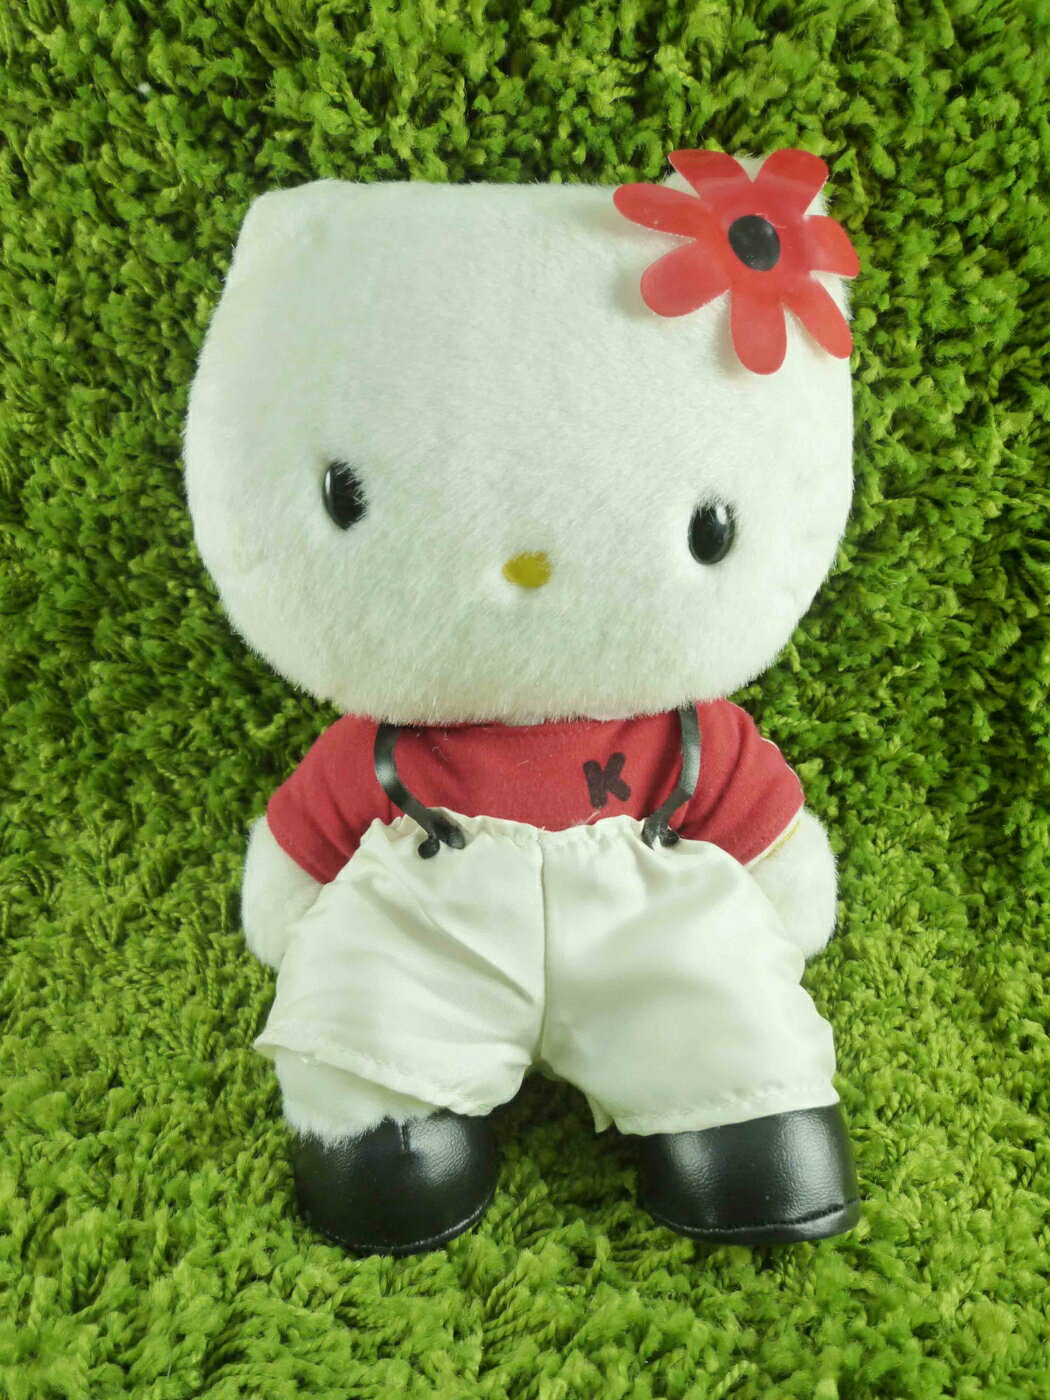 【震撼精品百貨】Hello Kitty 凱蒂貓 KITTY絨毛娃娃-紅花圖案 震撼日式精品百貨